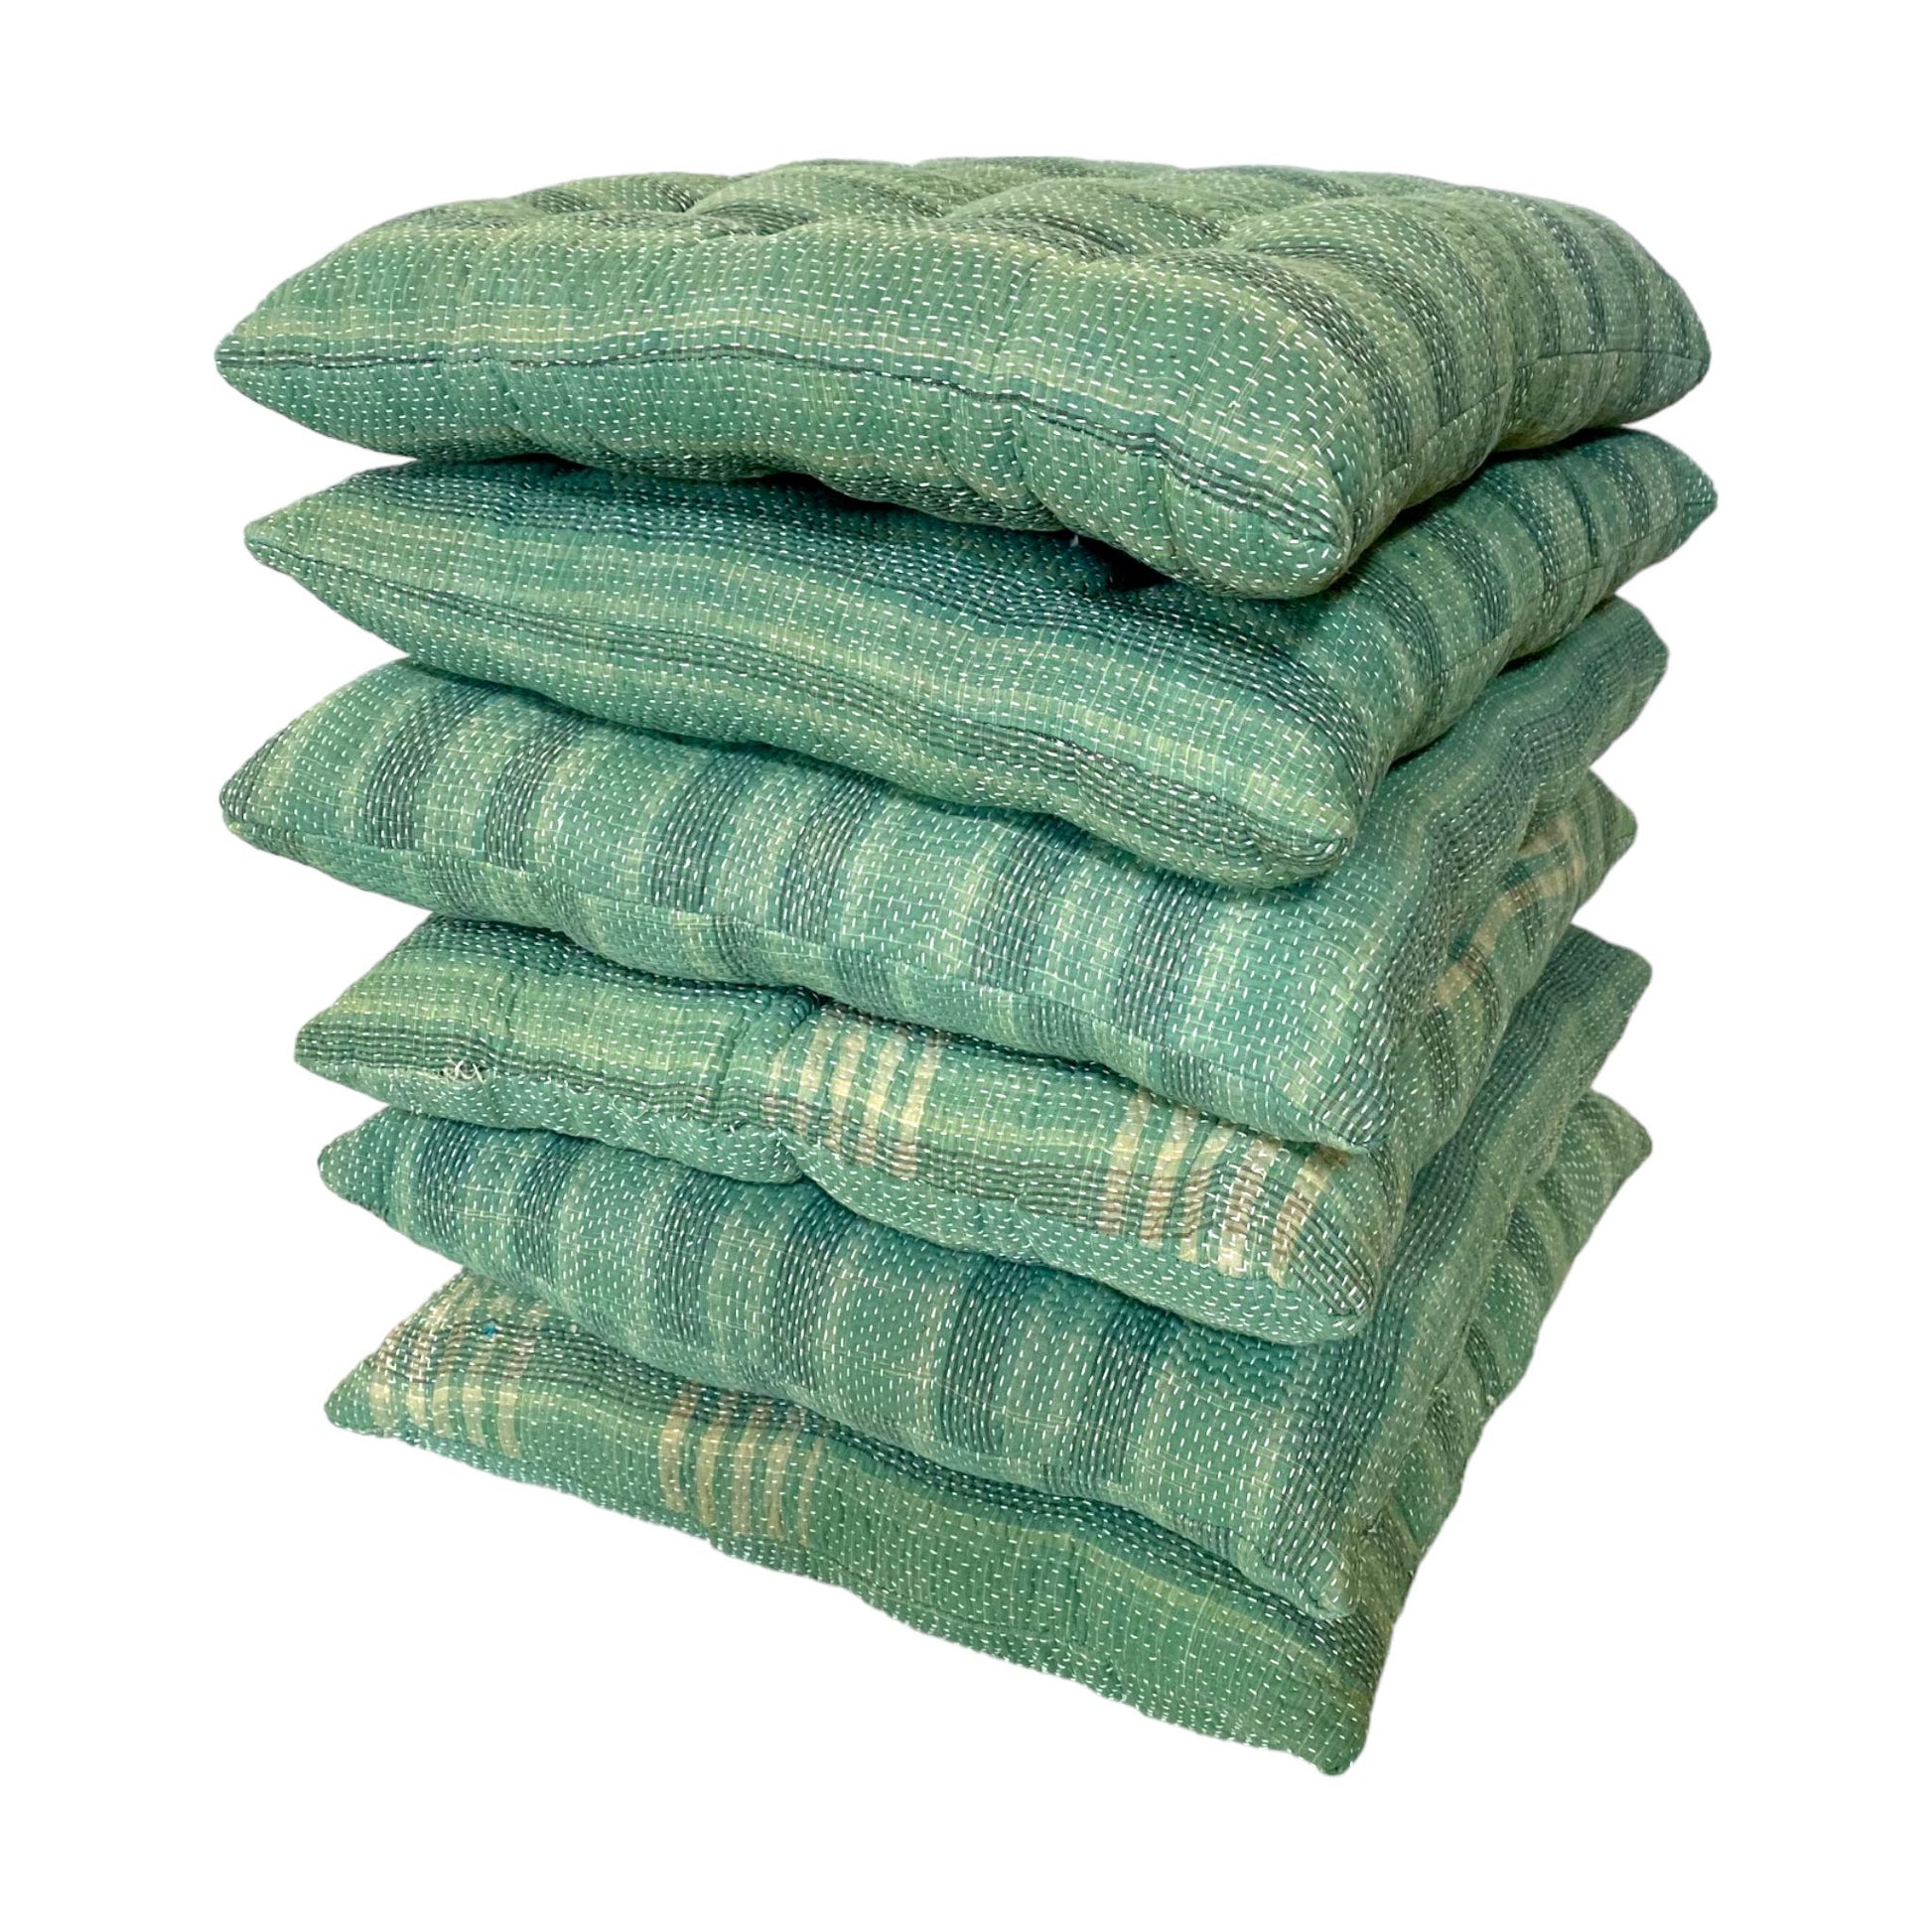 Green check kantha cushions